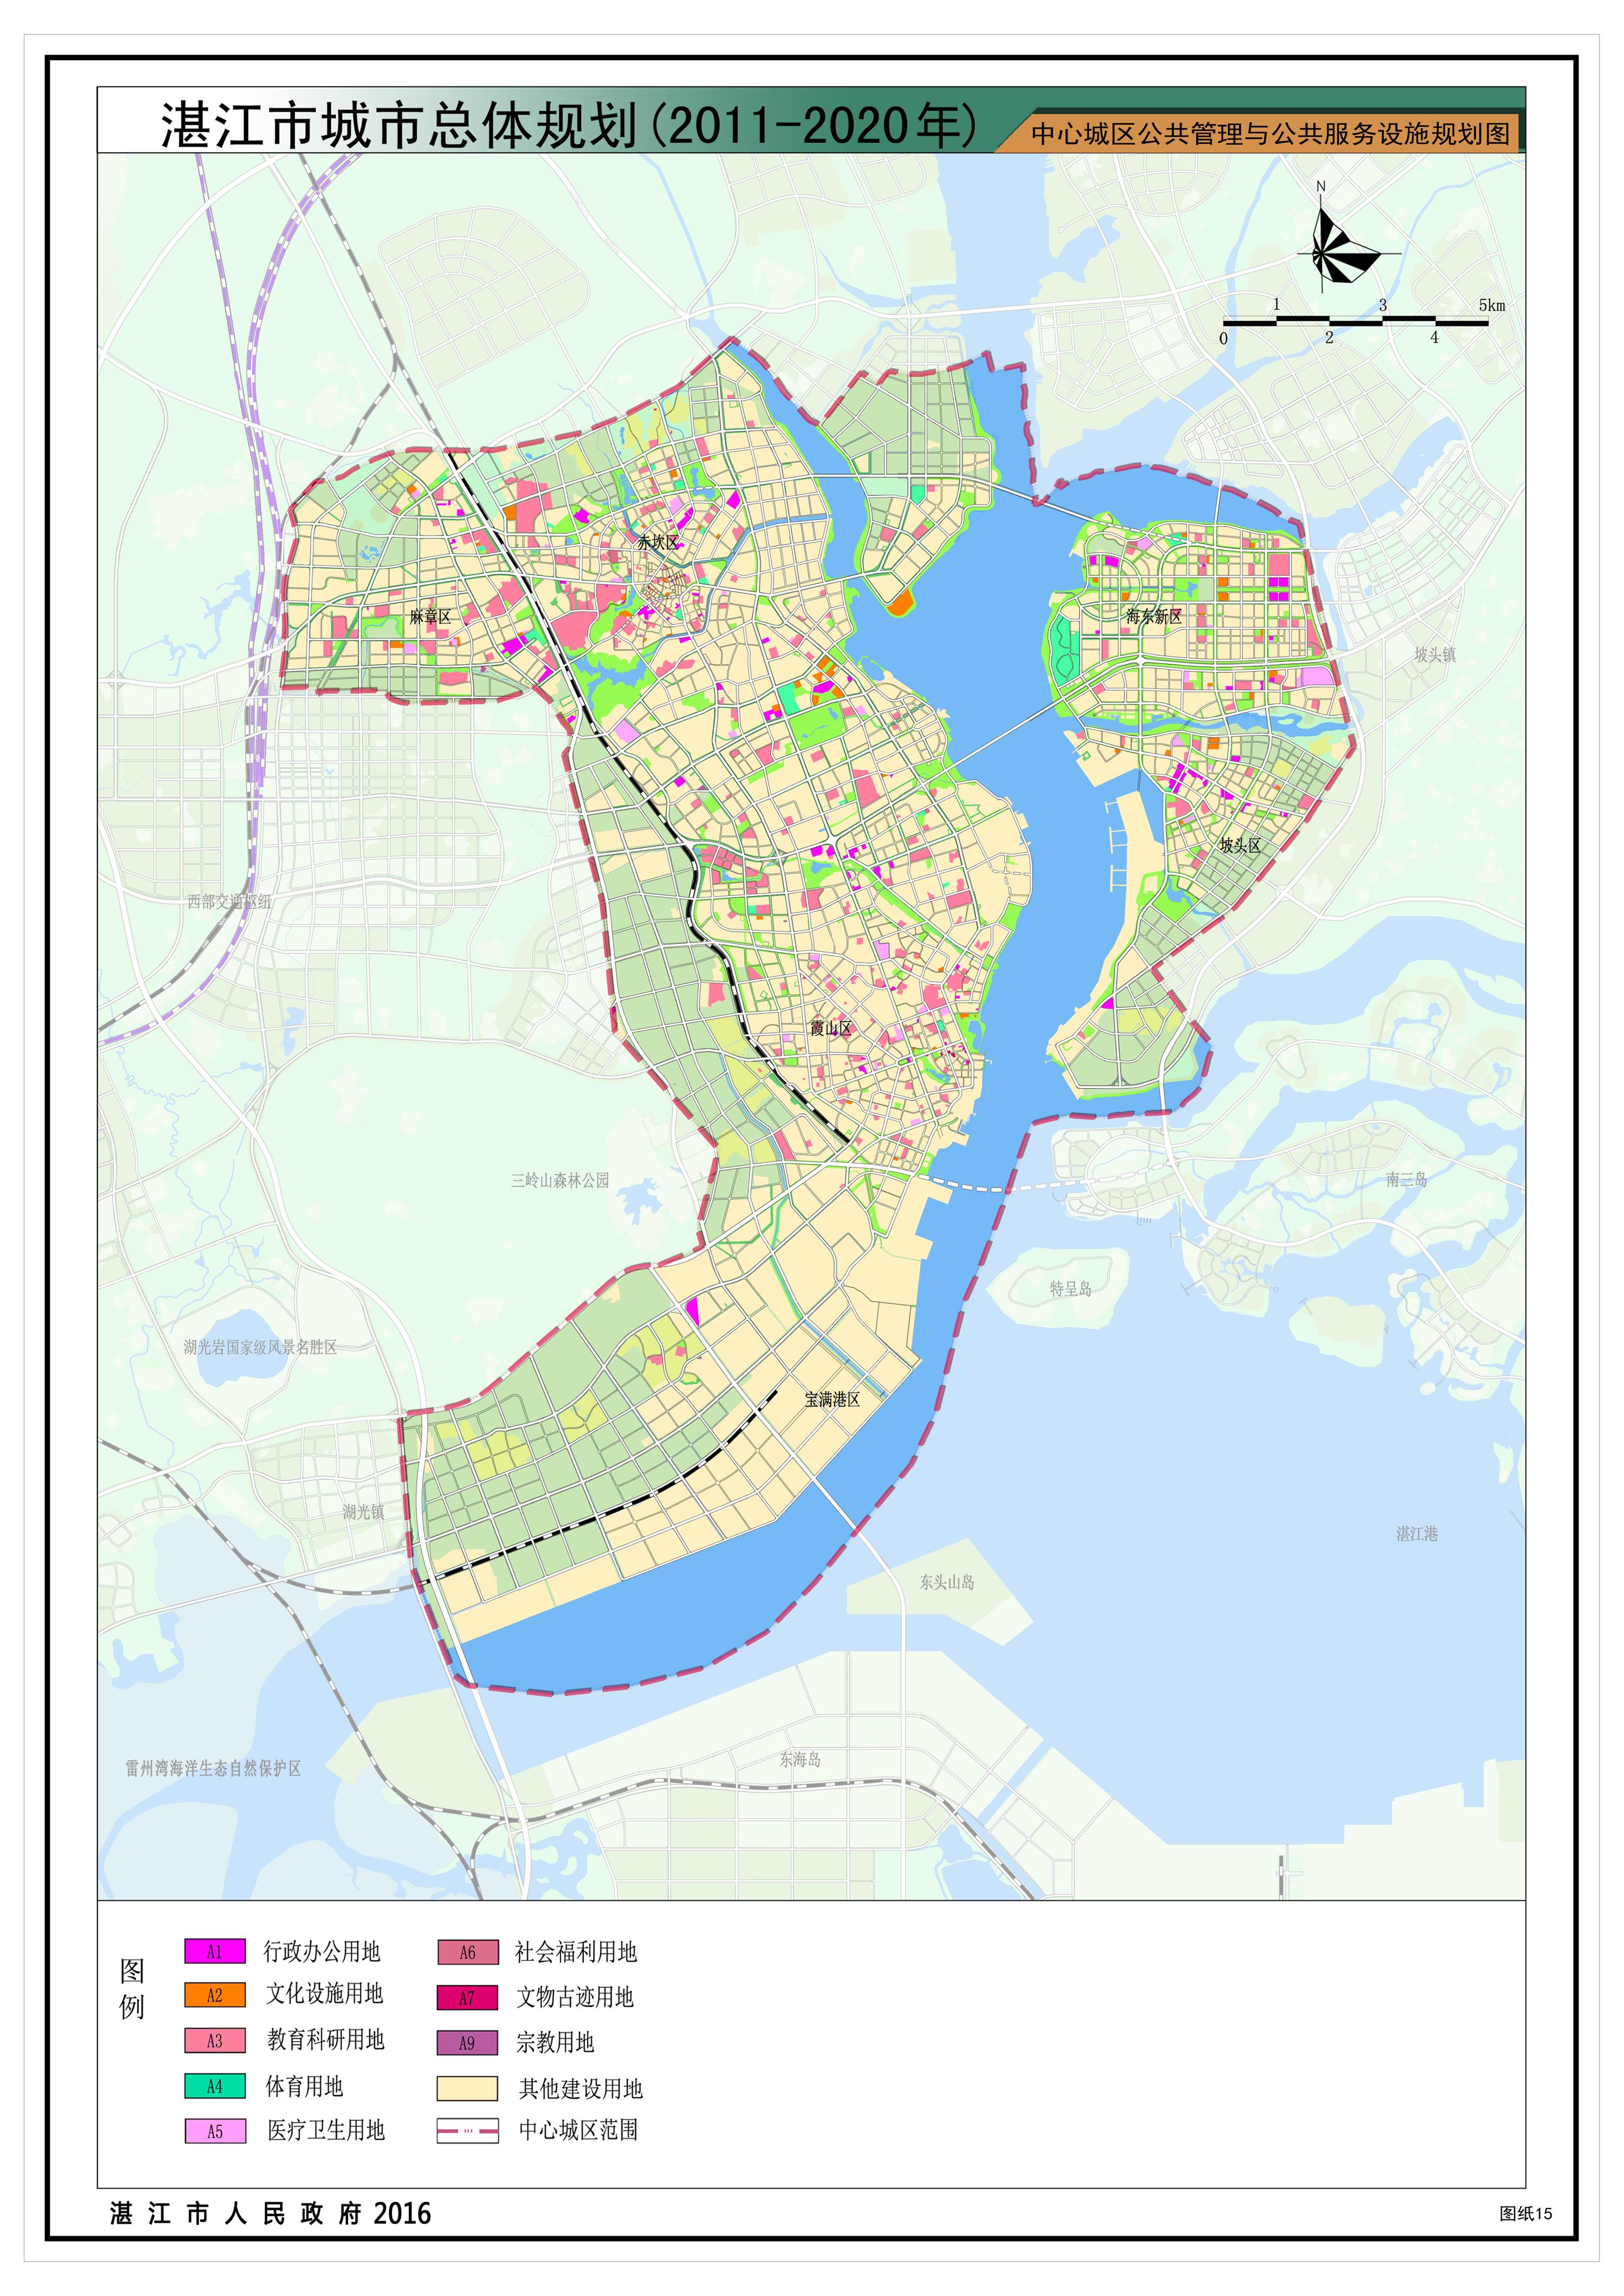 11中心城区公共管理与公共服务设施规划图.jpg